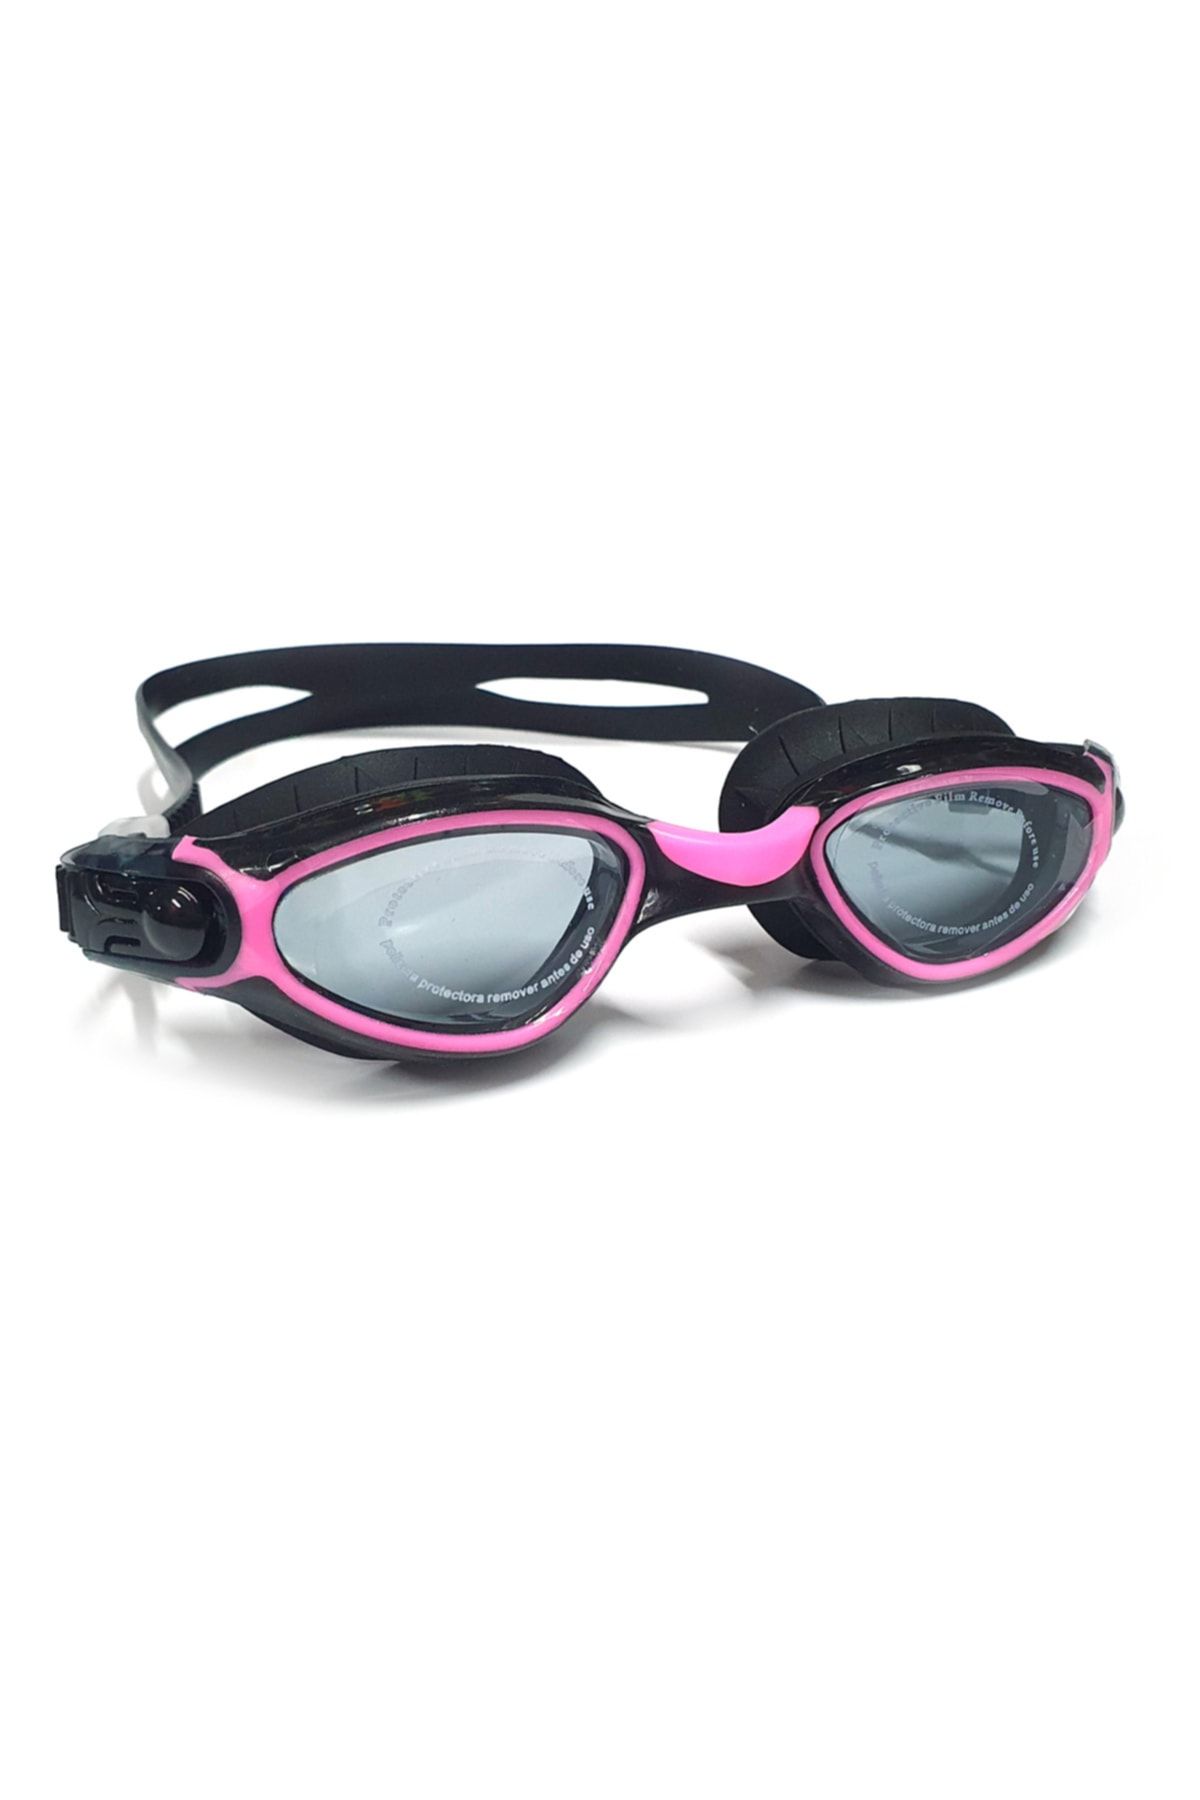 Tosima Pro Yetişkin Yüzücü Gözlüğü Silikon Havuz Gözlüğü Deniz Gözlüğü Antifog Gözlük